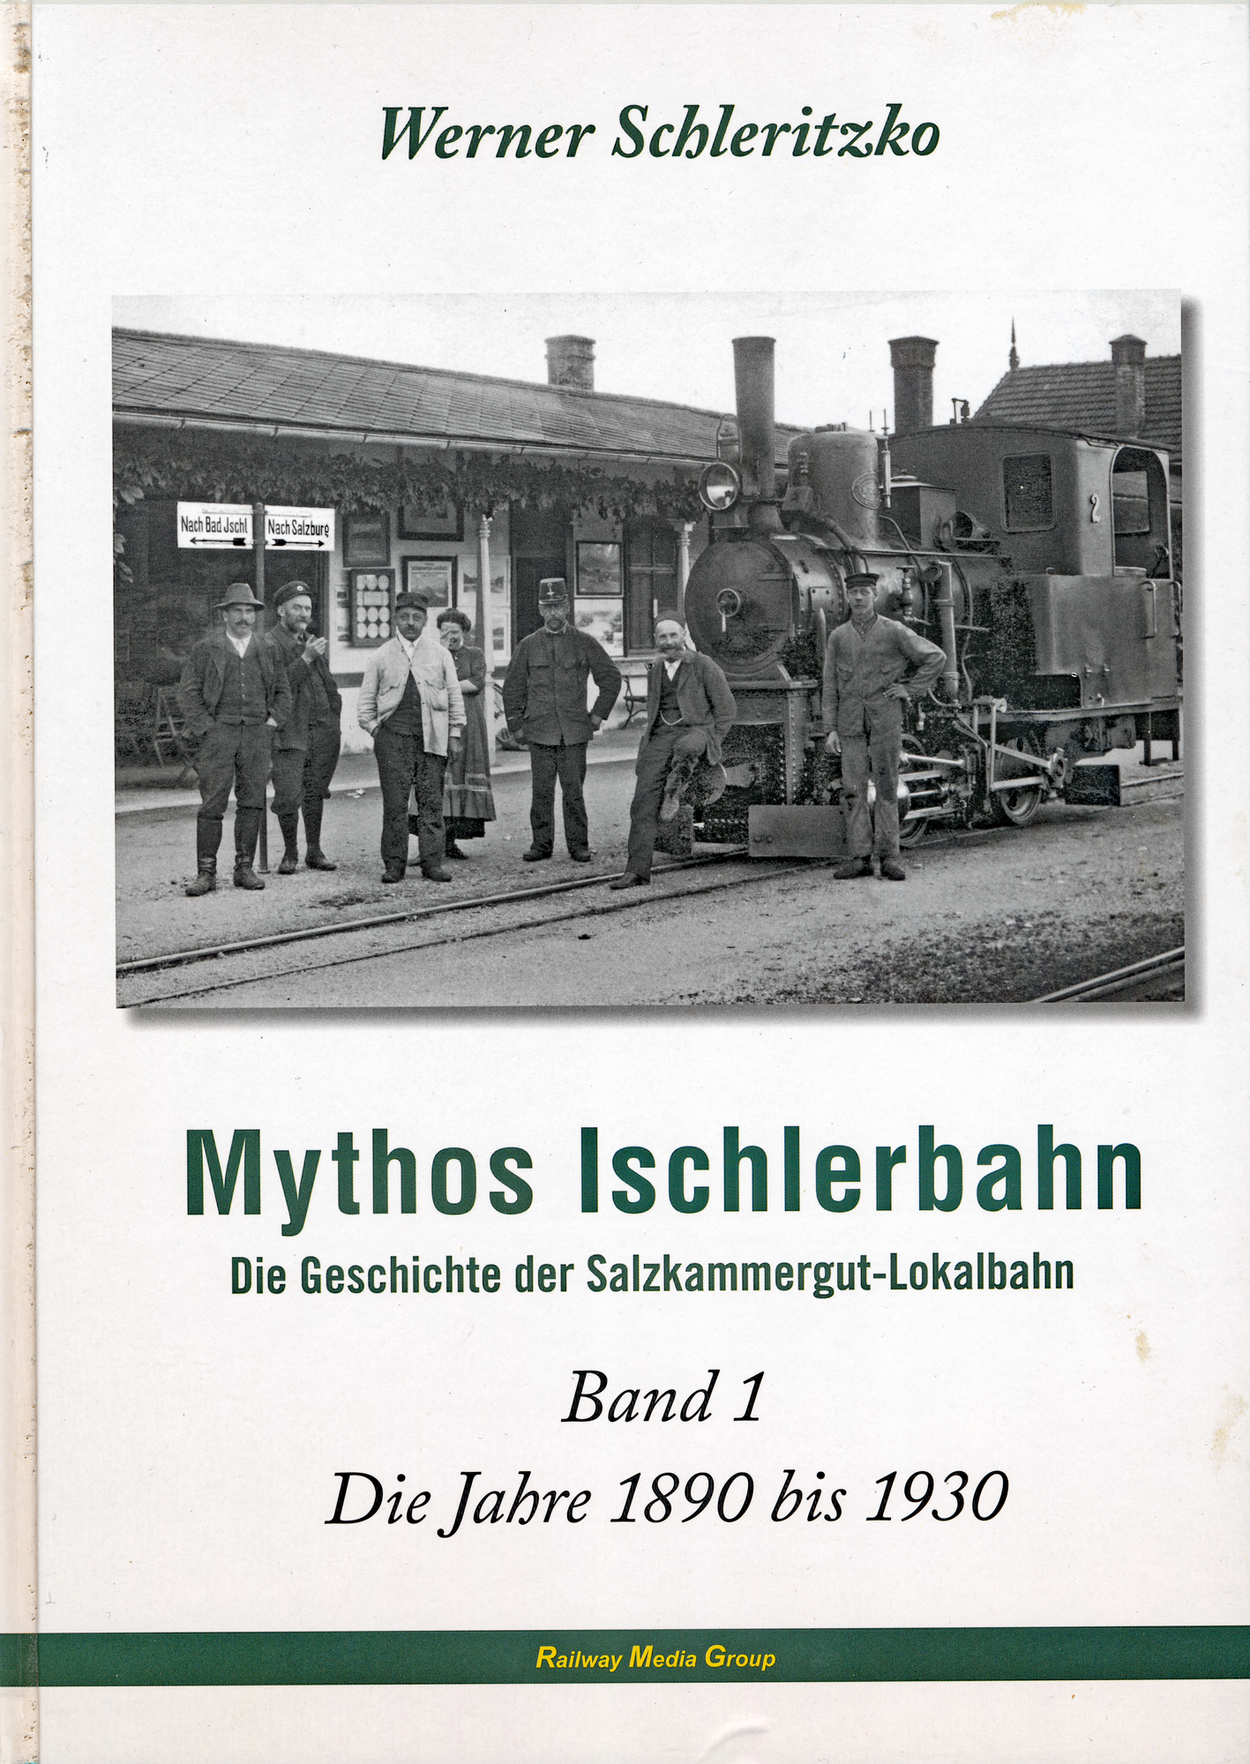 Buchreihe von Werner Schleritzko "Mythos Ischlerbahn"